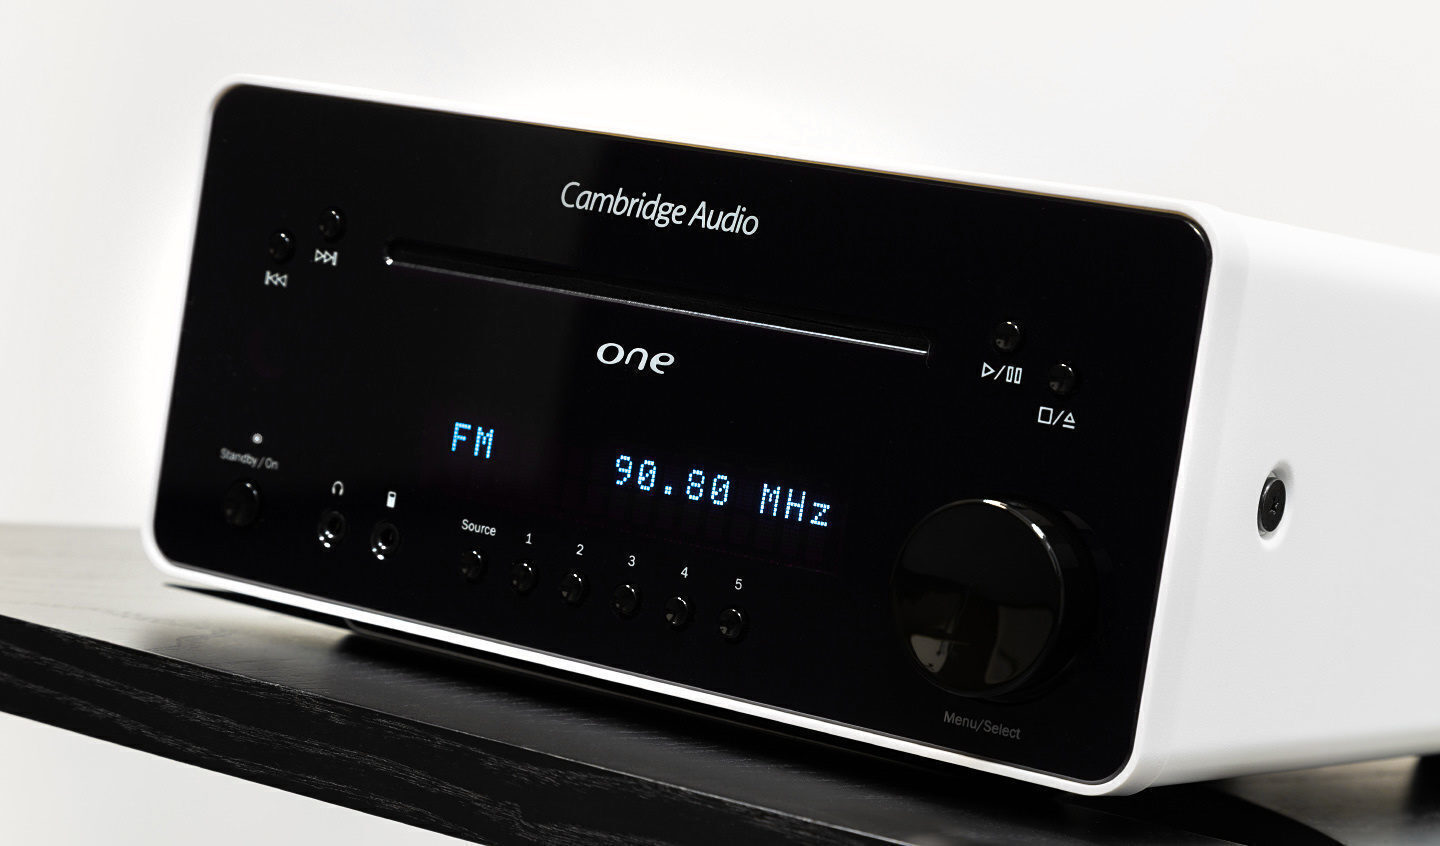 Тест компактной системы Cambridge Audio One: больше, чем кажется